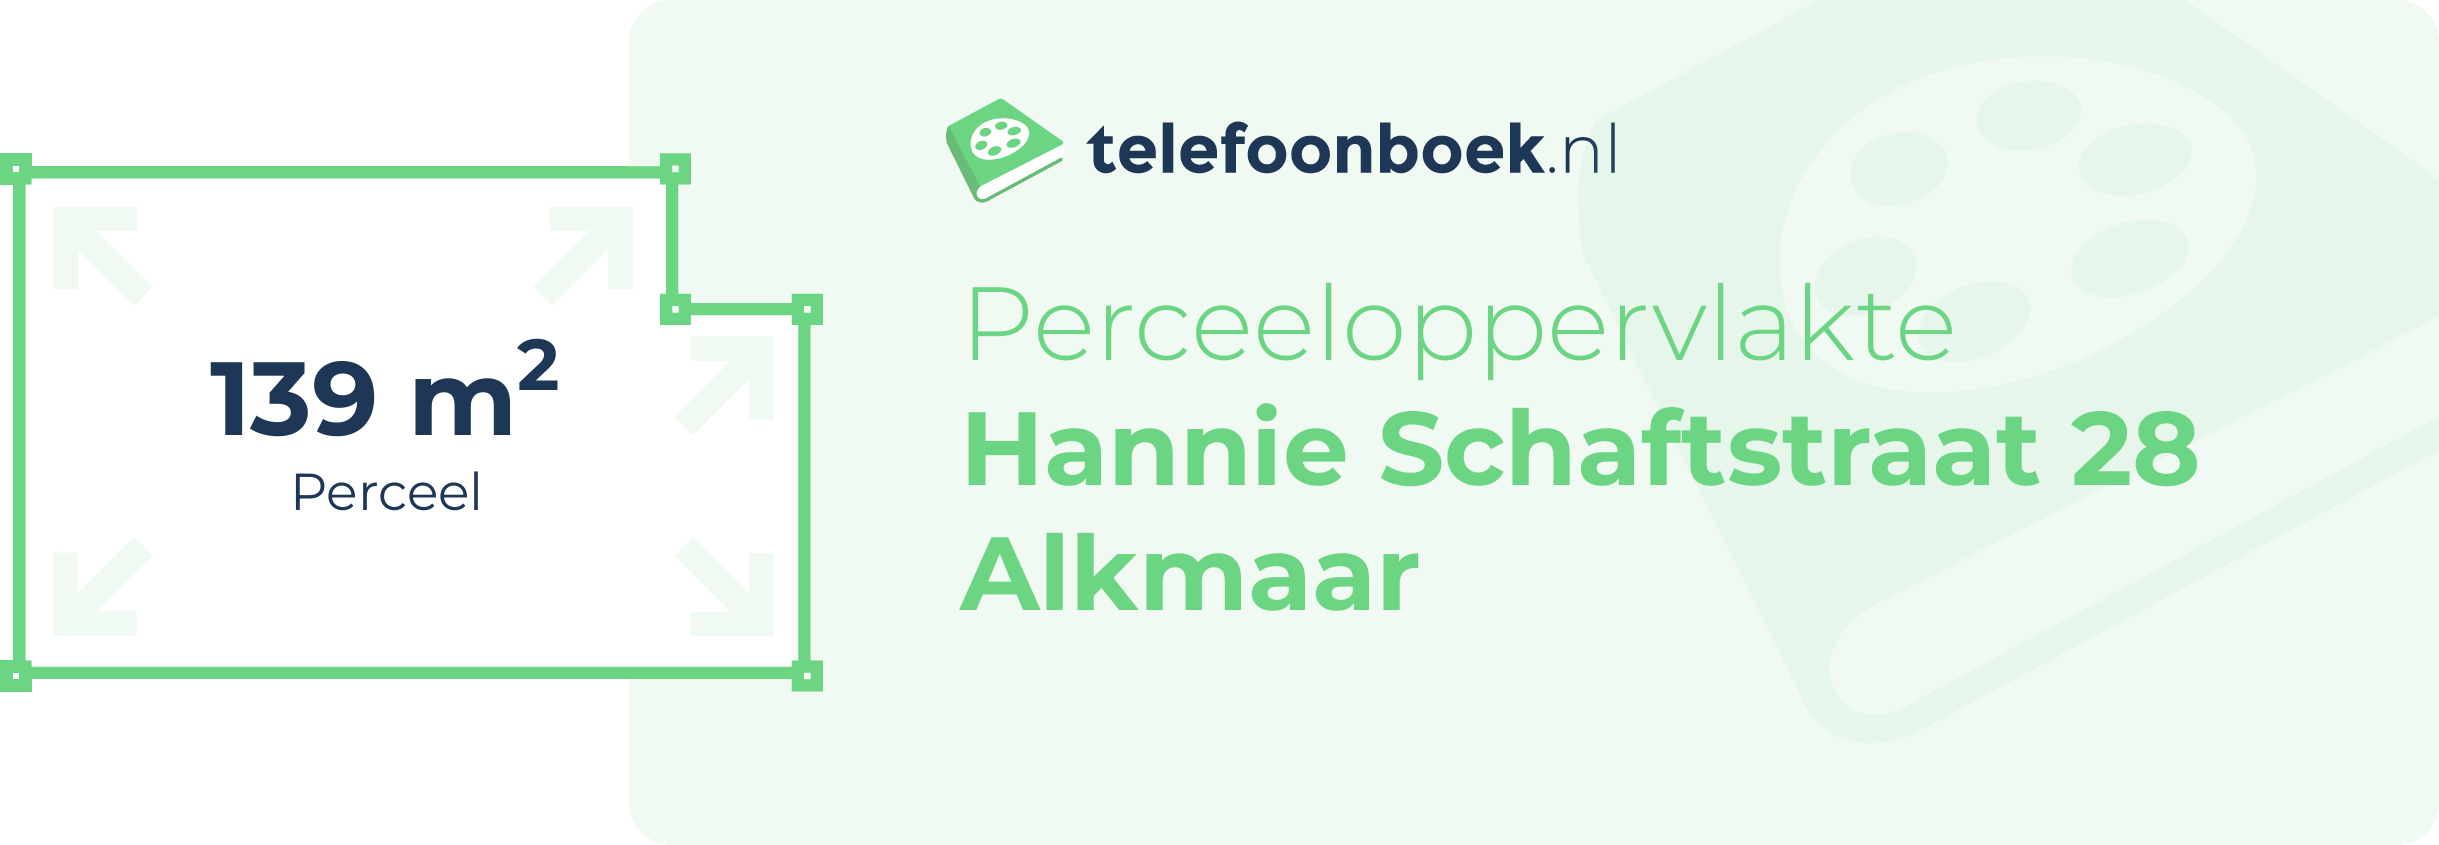 Perceeloppervlakte Hannie Schaftstraat 28 Alkmaar